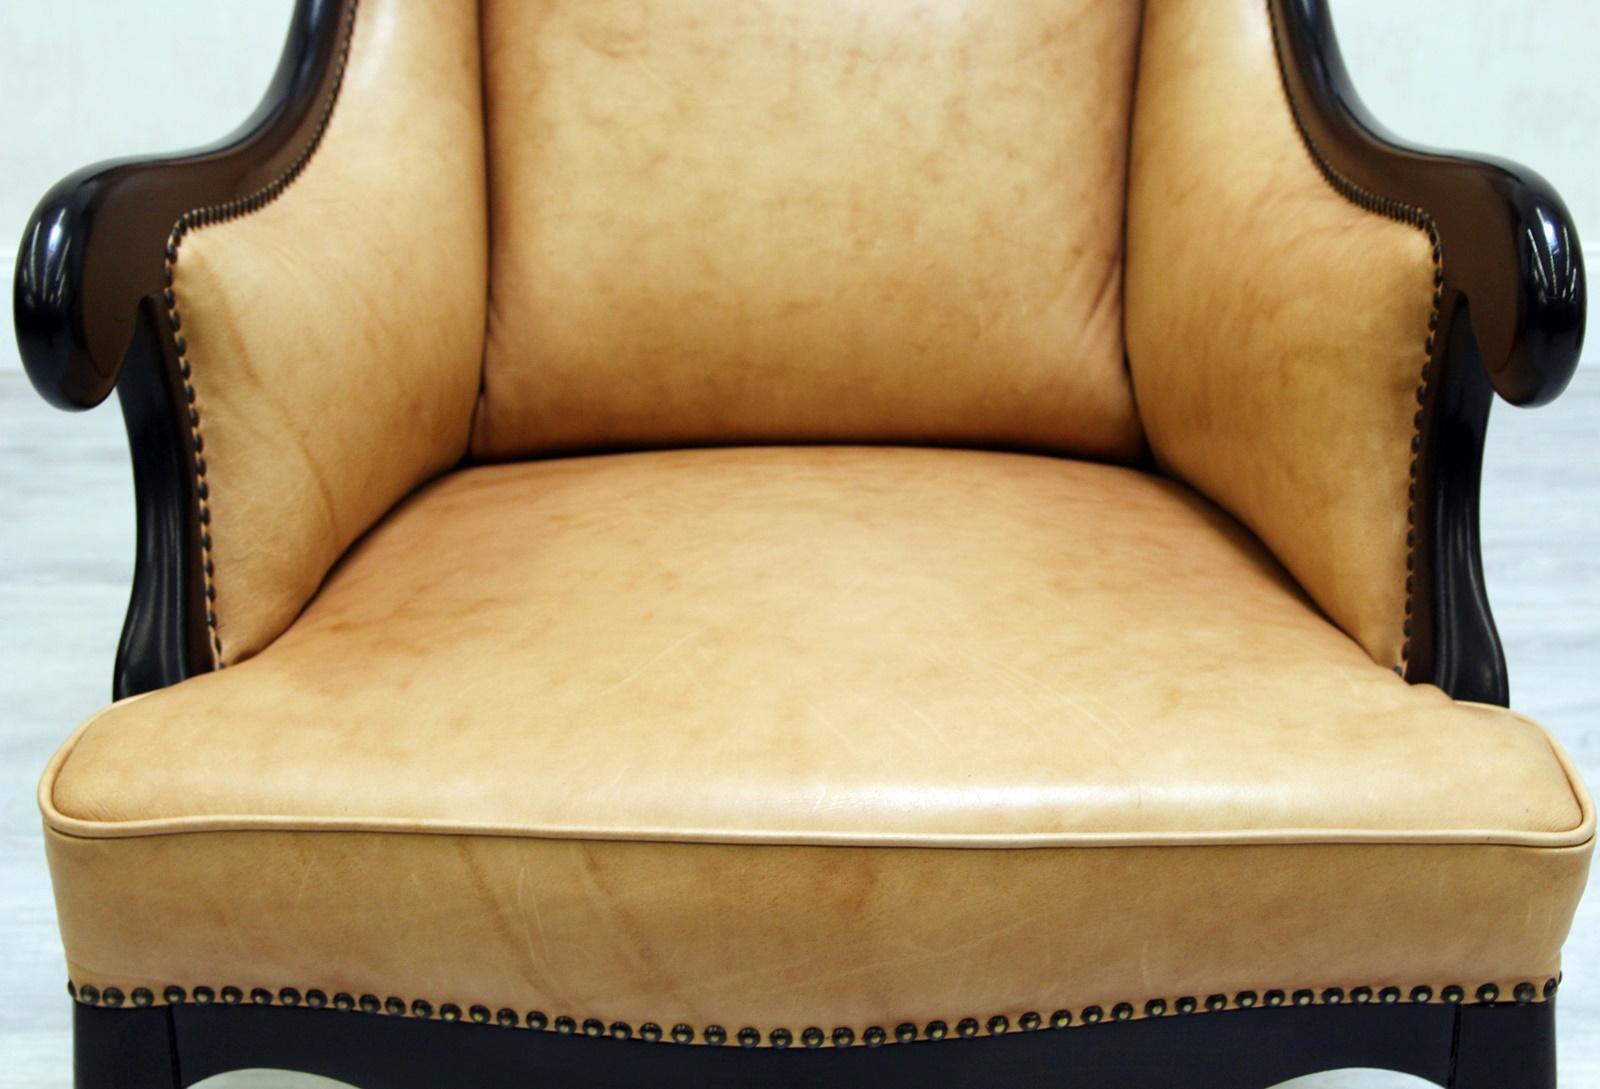 Chippendale Sessel aus echtem Leder.
Im Originaldesign und neu bezogen mit echtem Leder.

Zustand: Der Stuhl ist in einem sehr guten Zustand
Sessel.
Maße: Höhe x 112cm, Länge x 86cm, Tiefe x 85cm.
Die Polsterung ist in einem sehr guten Zustand